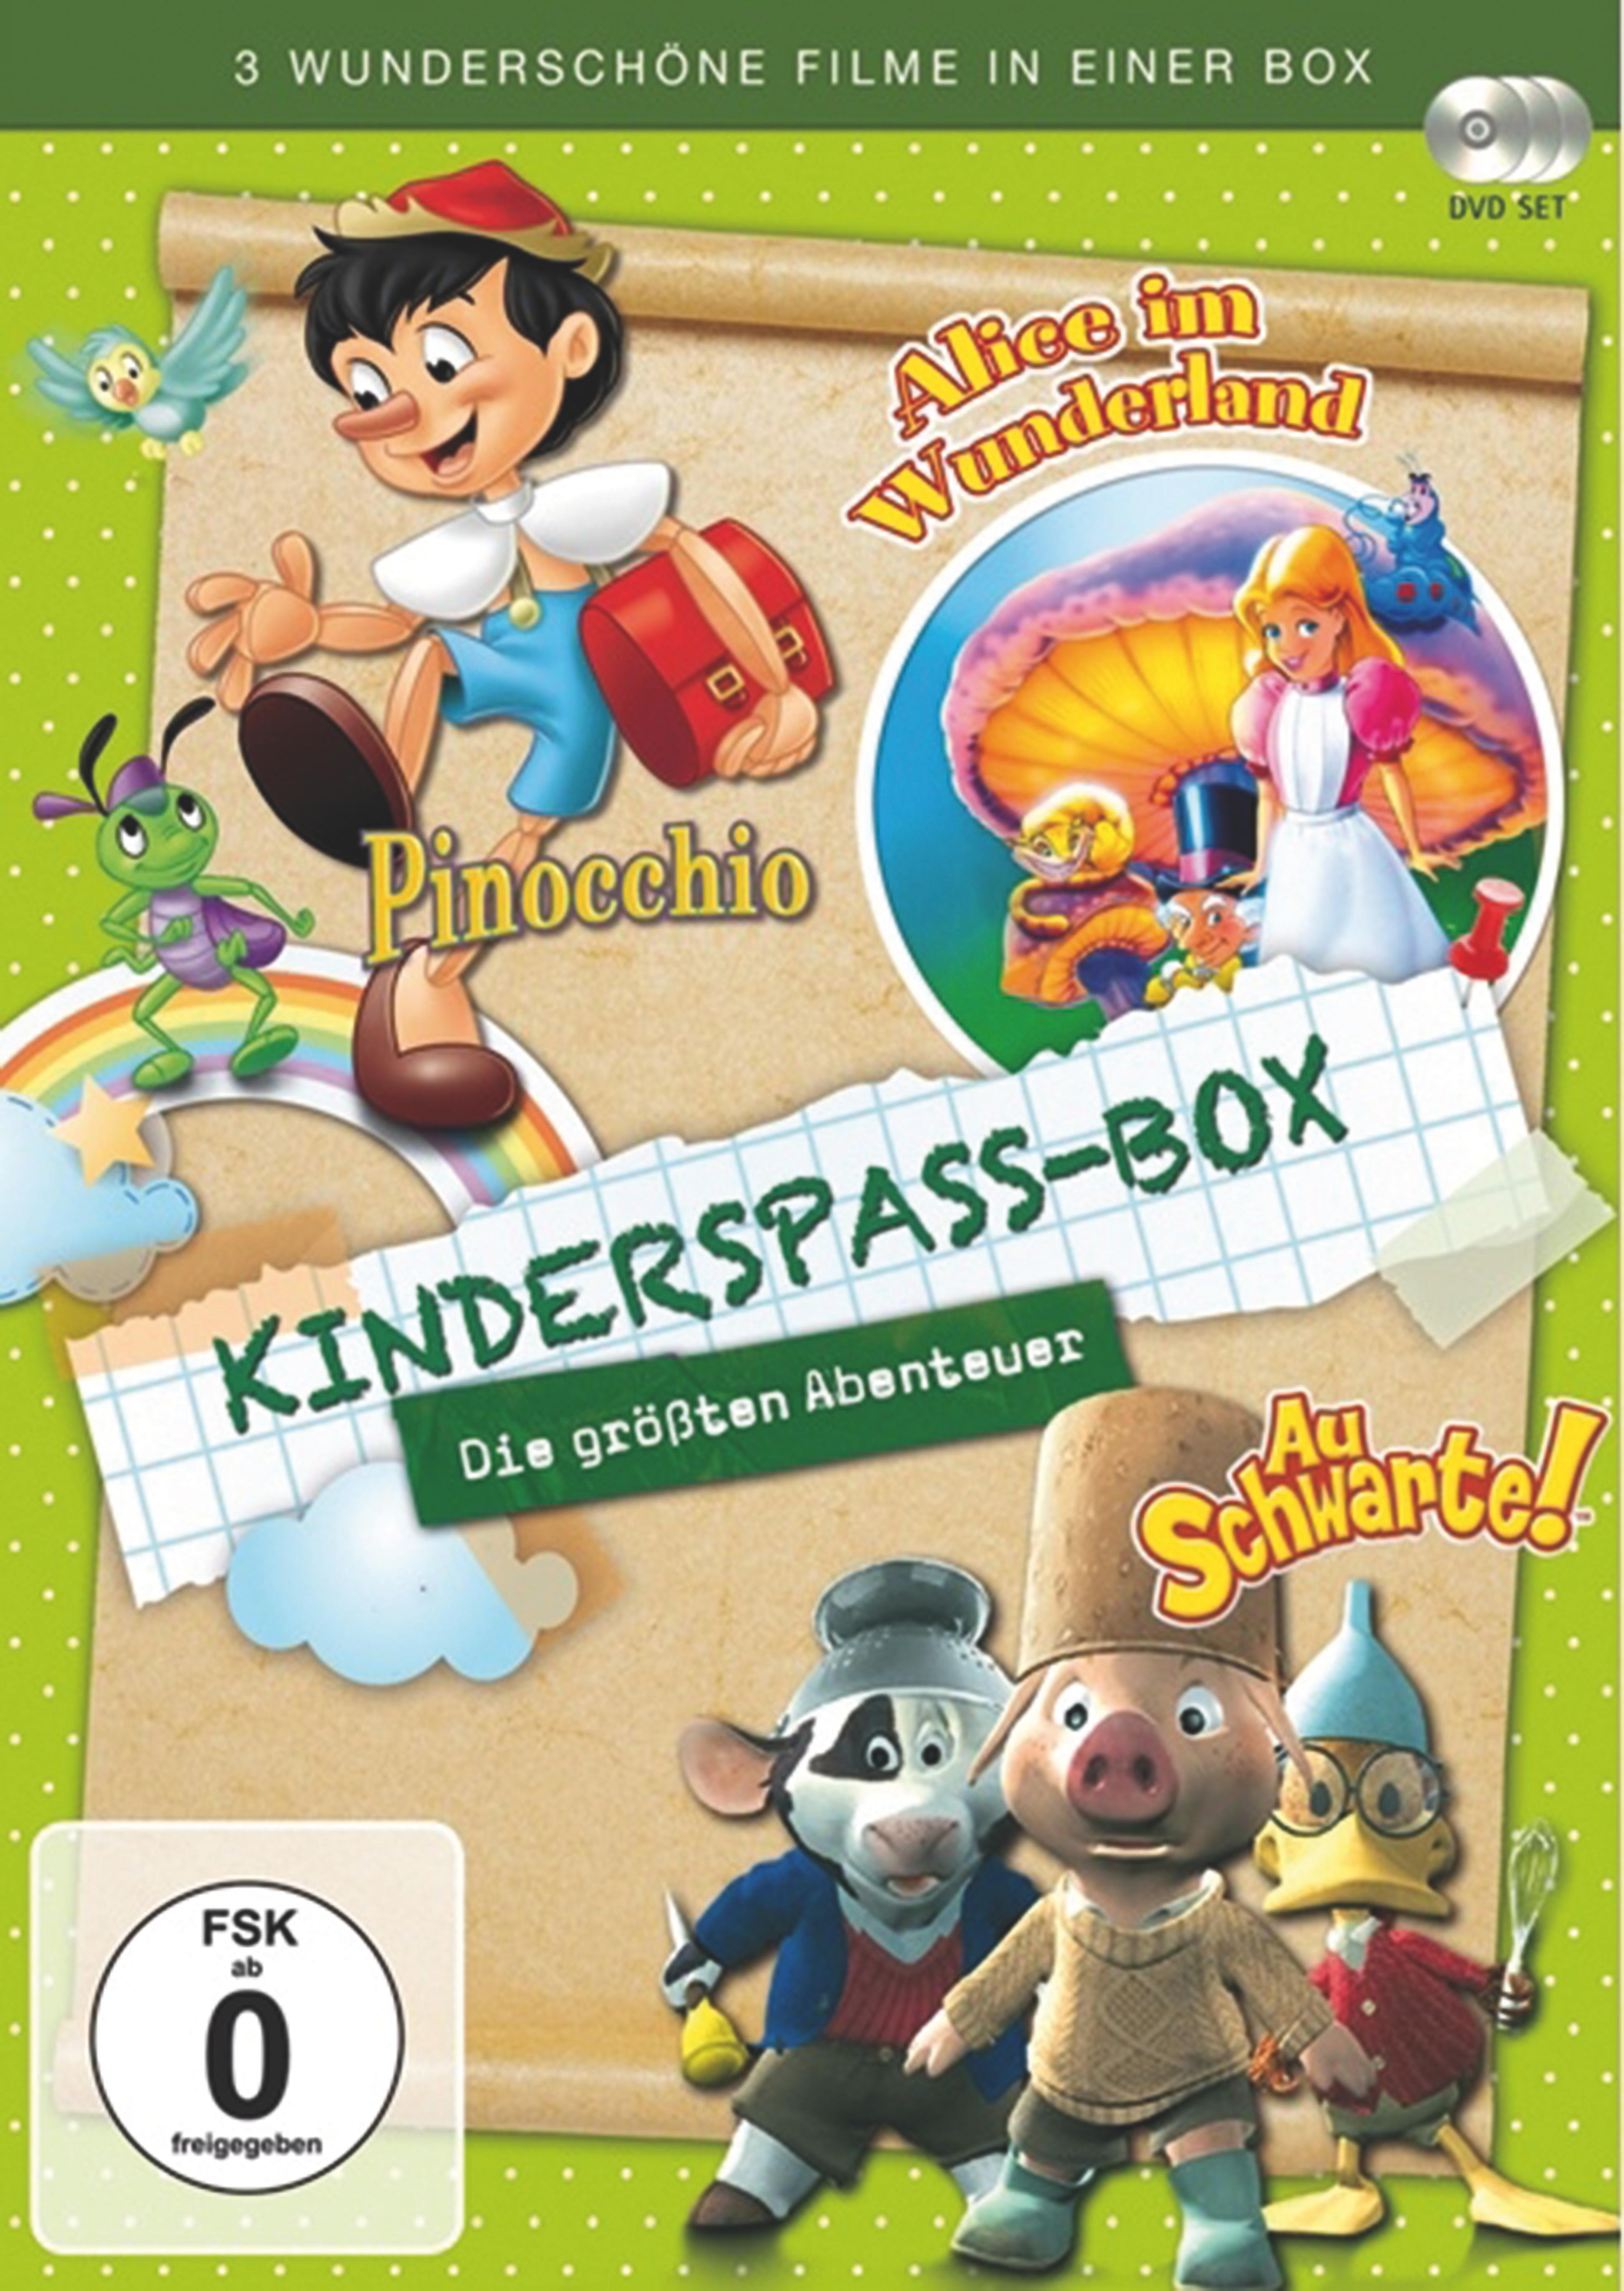 größten - Die Kinderspass DVD Box Abenteuer